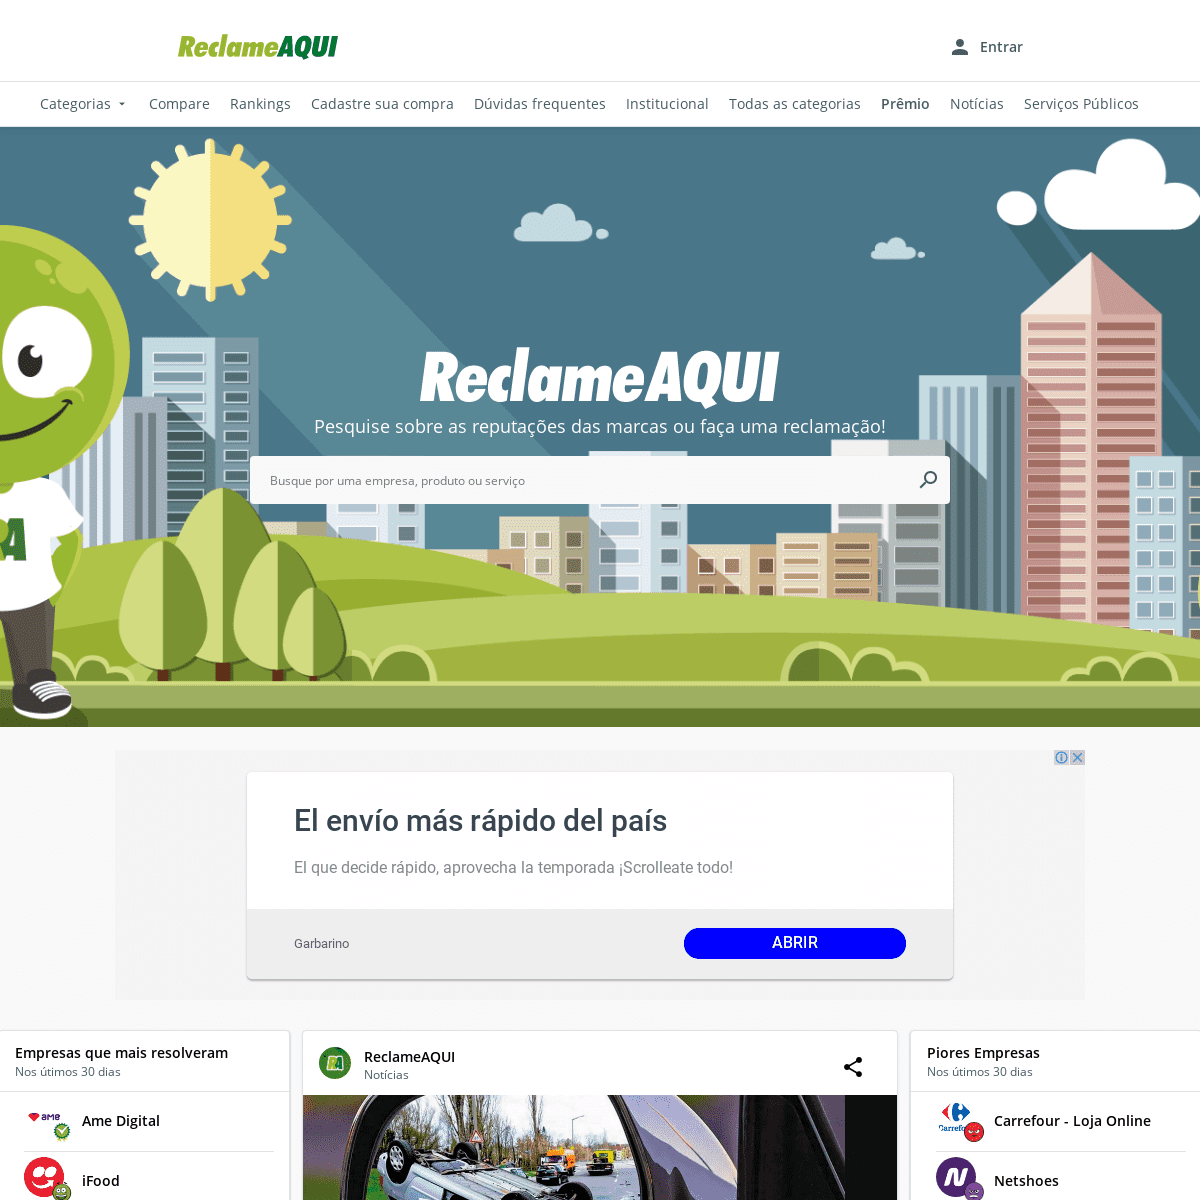 A complete backup of reclameaqui.com.br